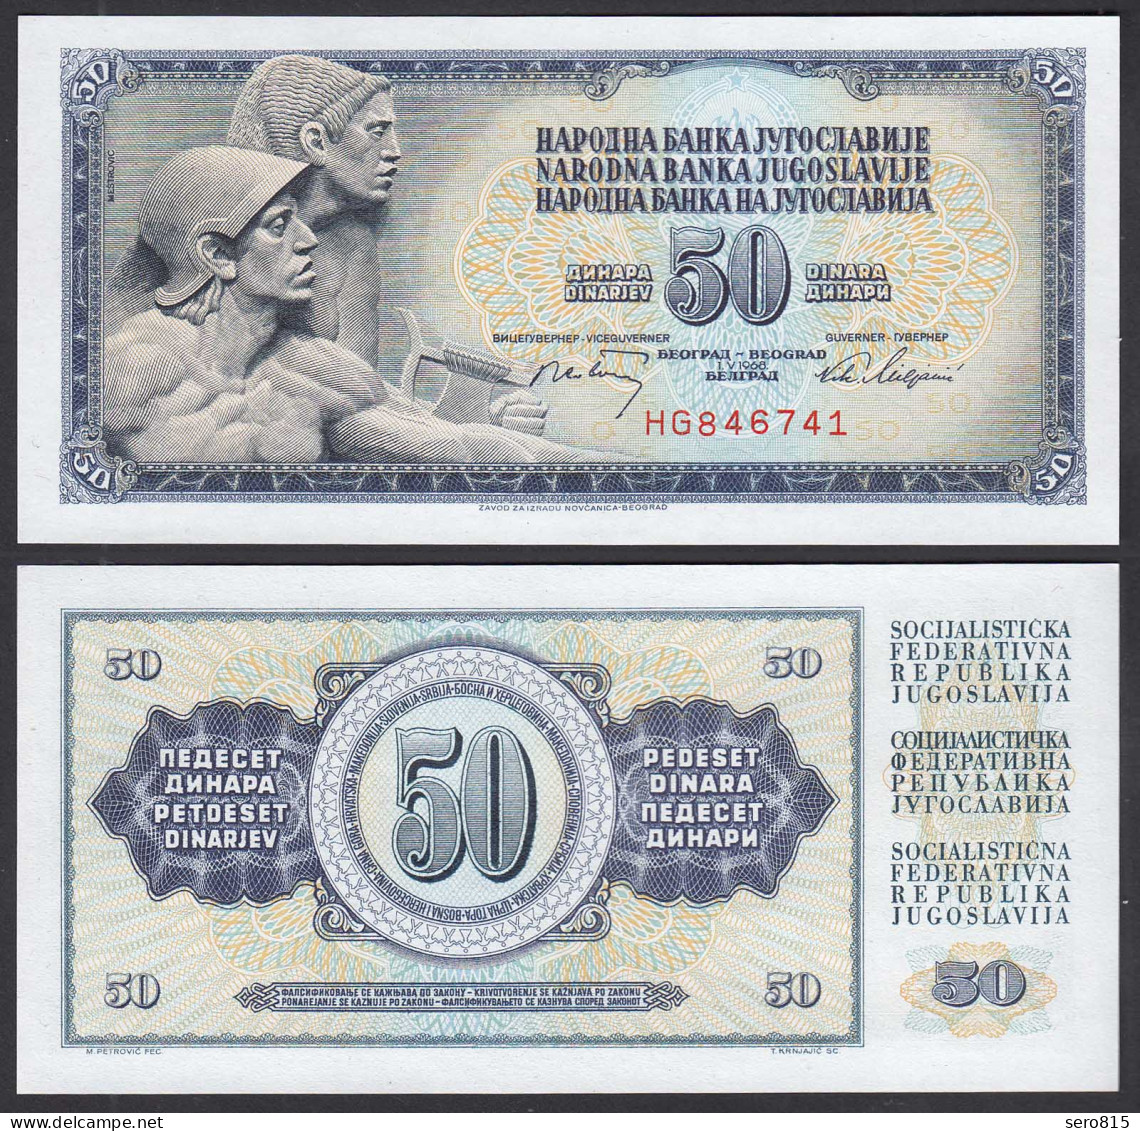 JUGOSLAWIEN - YUGOSLAVIA 50 Dinara 1968 Pick 83b UNC (1)    (29979 - Jugoslavia